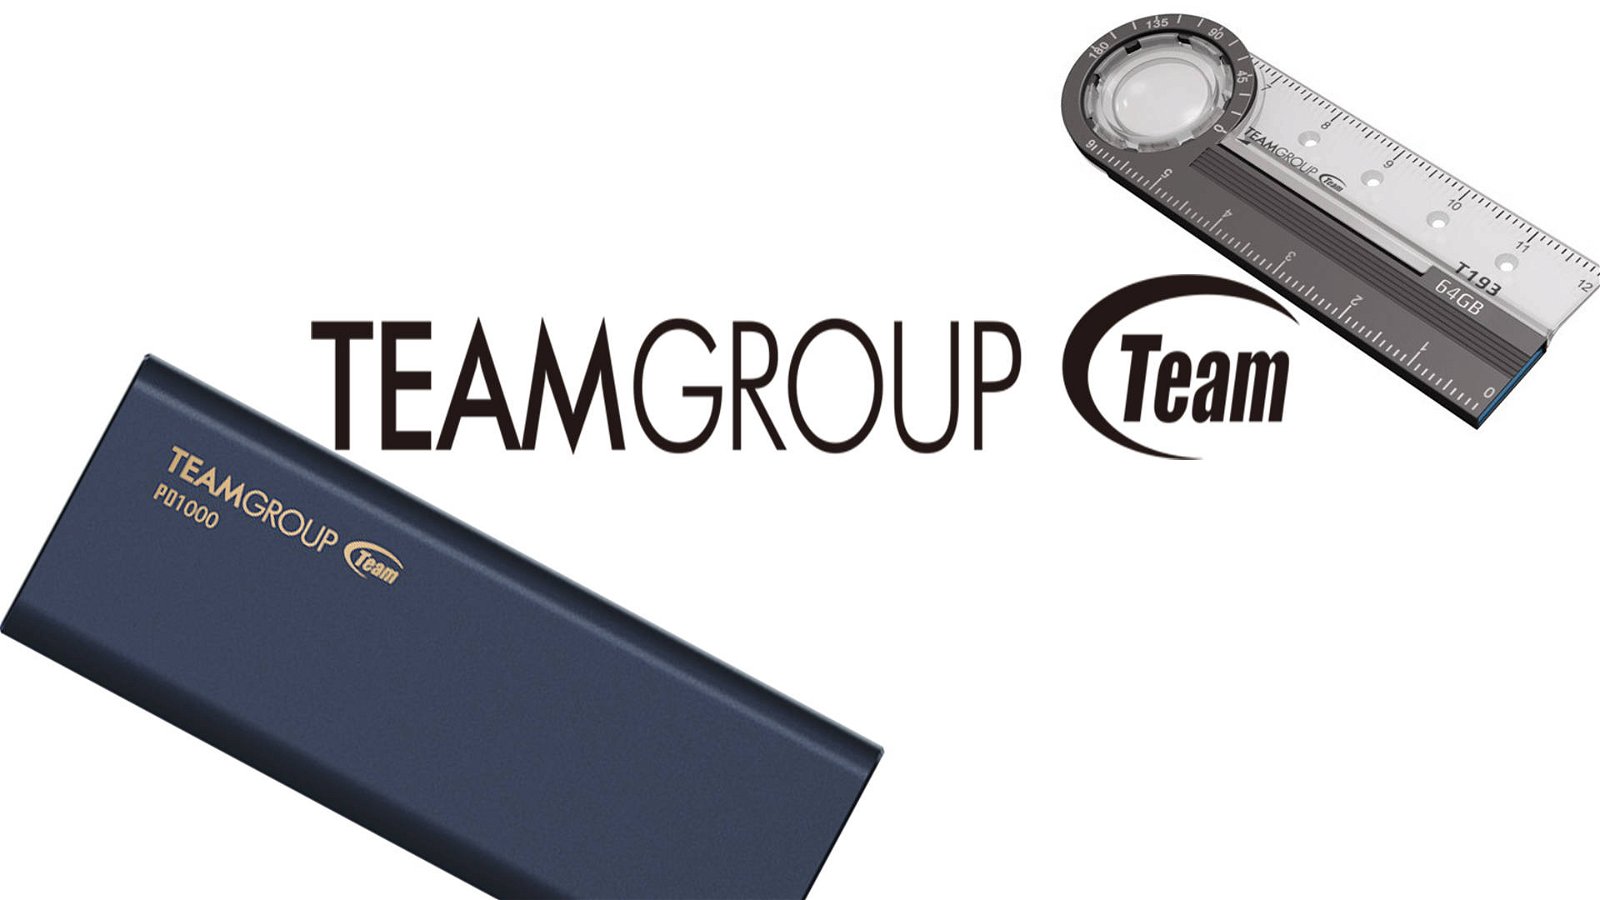 Immagine di TEAMGROUP presenta un SSD portatile e una pendrive USB tuttofare